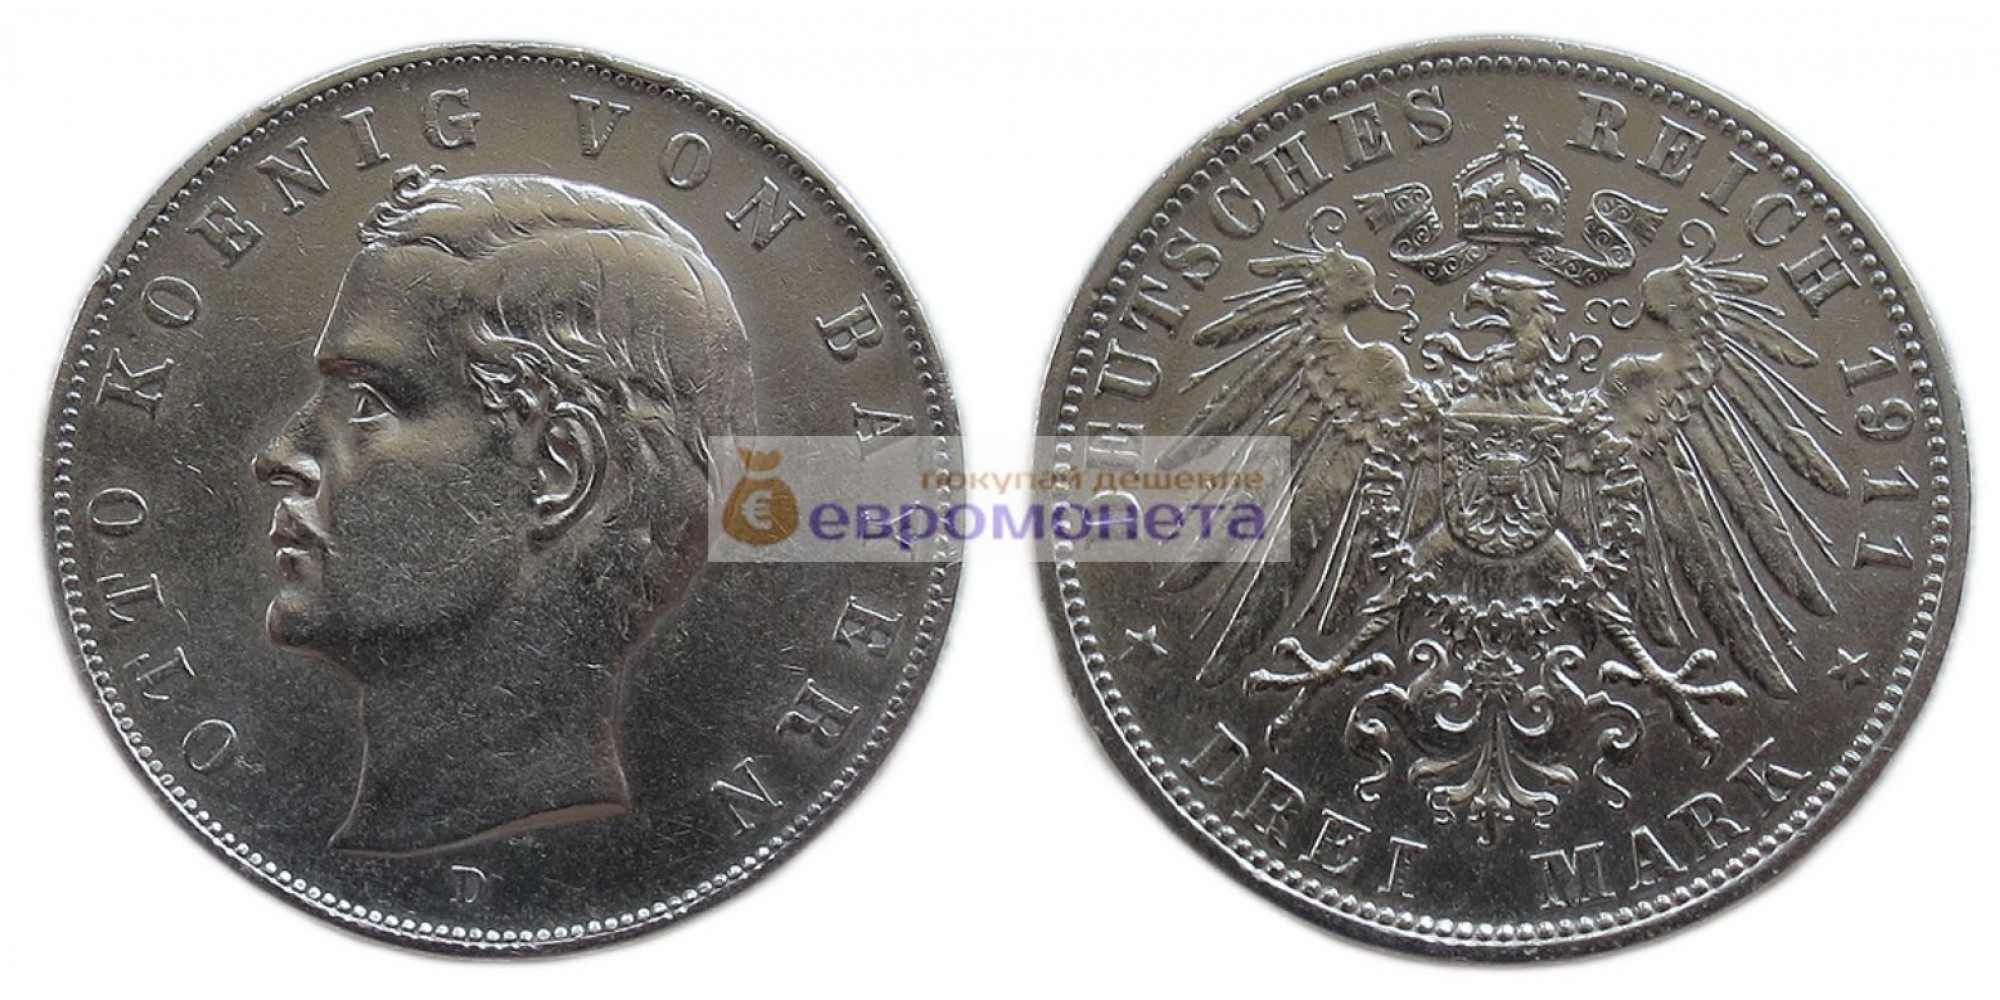 Германская империя Бавария 3 марки 1911 год "D" Отто. Серебро.